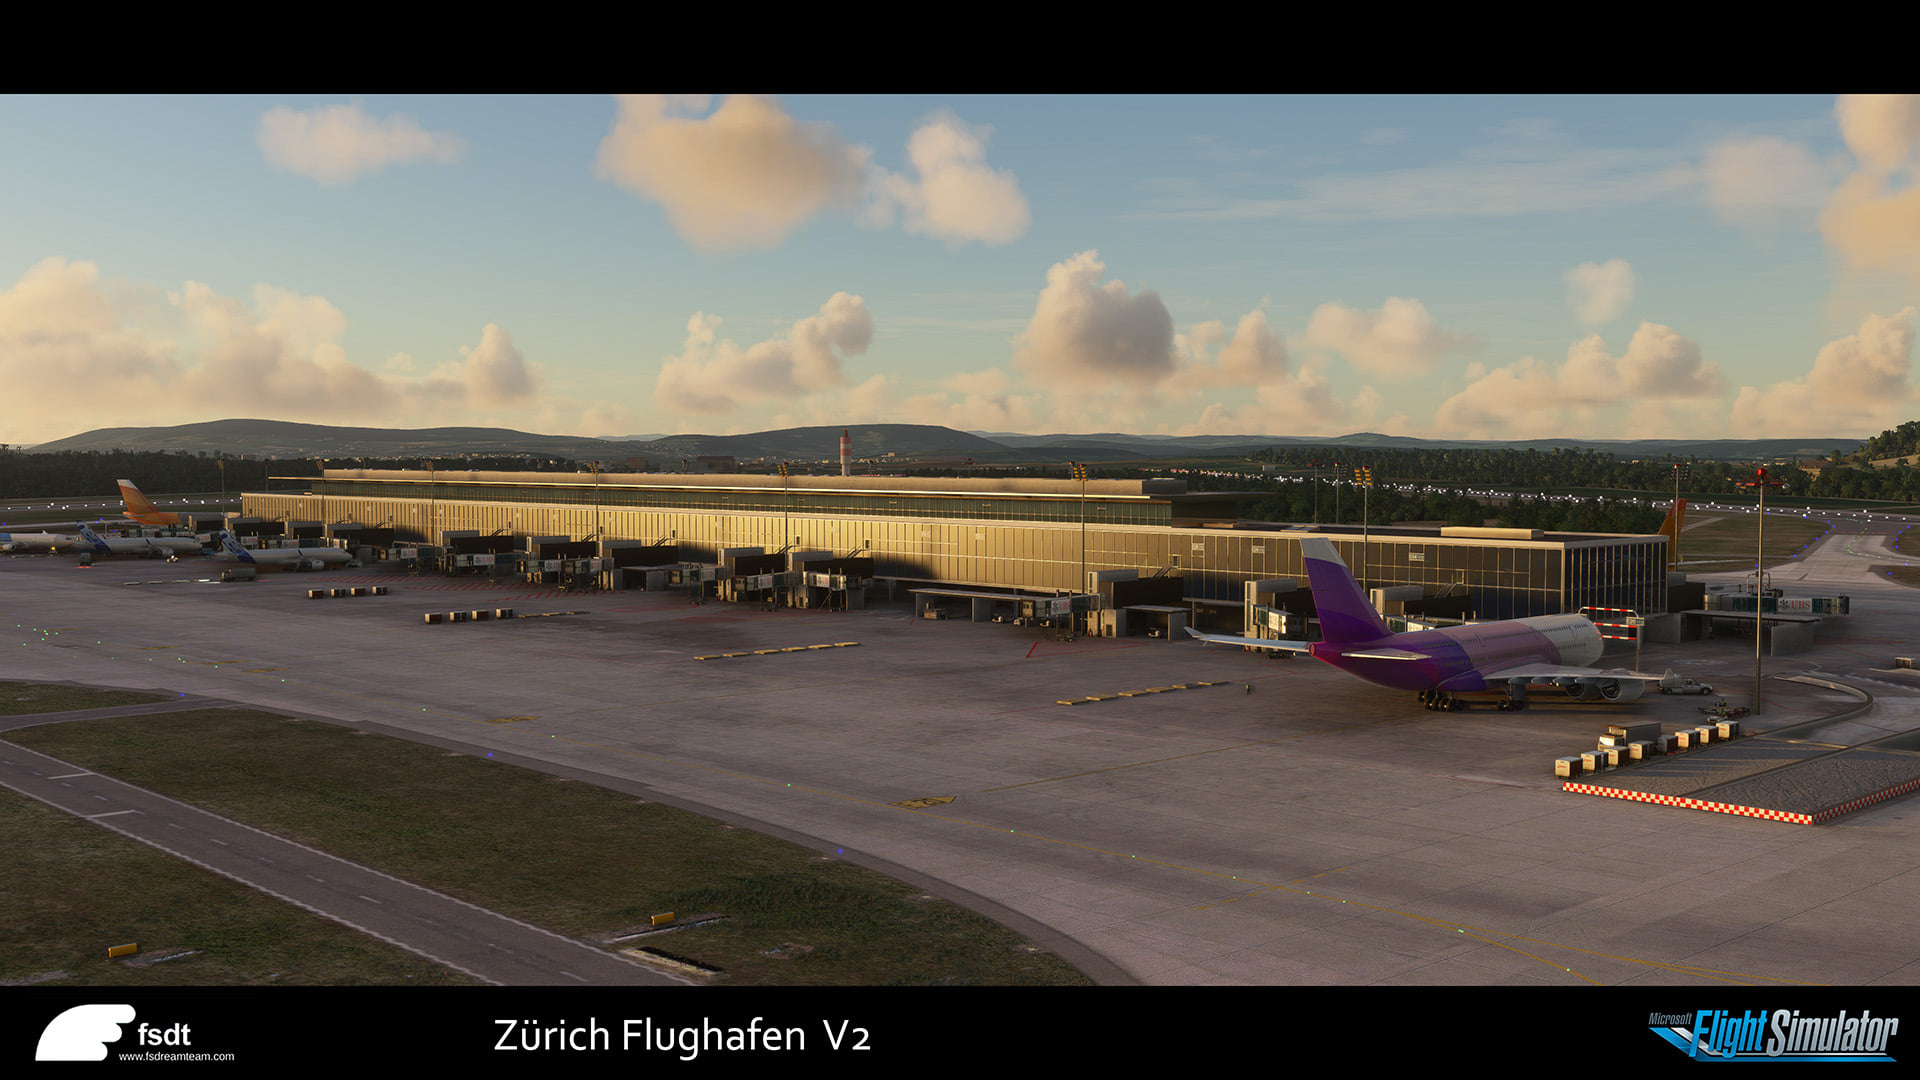 Zurich airport msfs 1